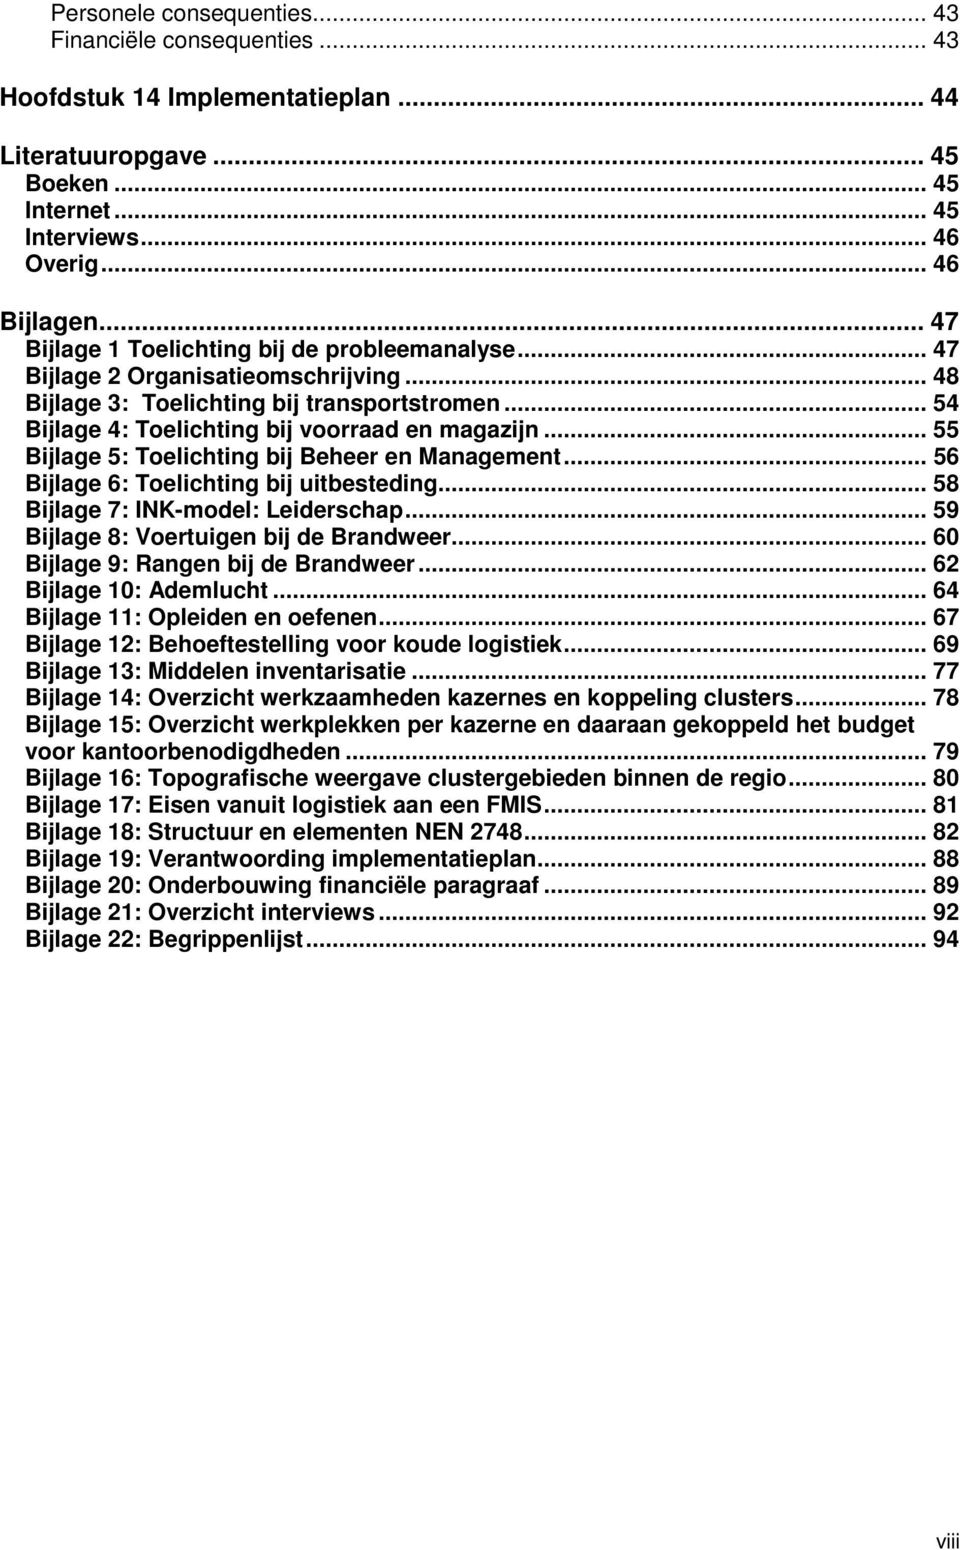 .. 55 Bijlage 5: Toelichting bij Beheer en Management... 56 Bijlage 6: Toelichting bij uitbesteding... 58 Bijlage 7: INK-model: Leiderschap... 59 Bijlage 8: Voertuigen bij de Brandweer.